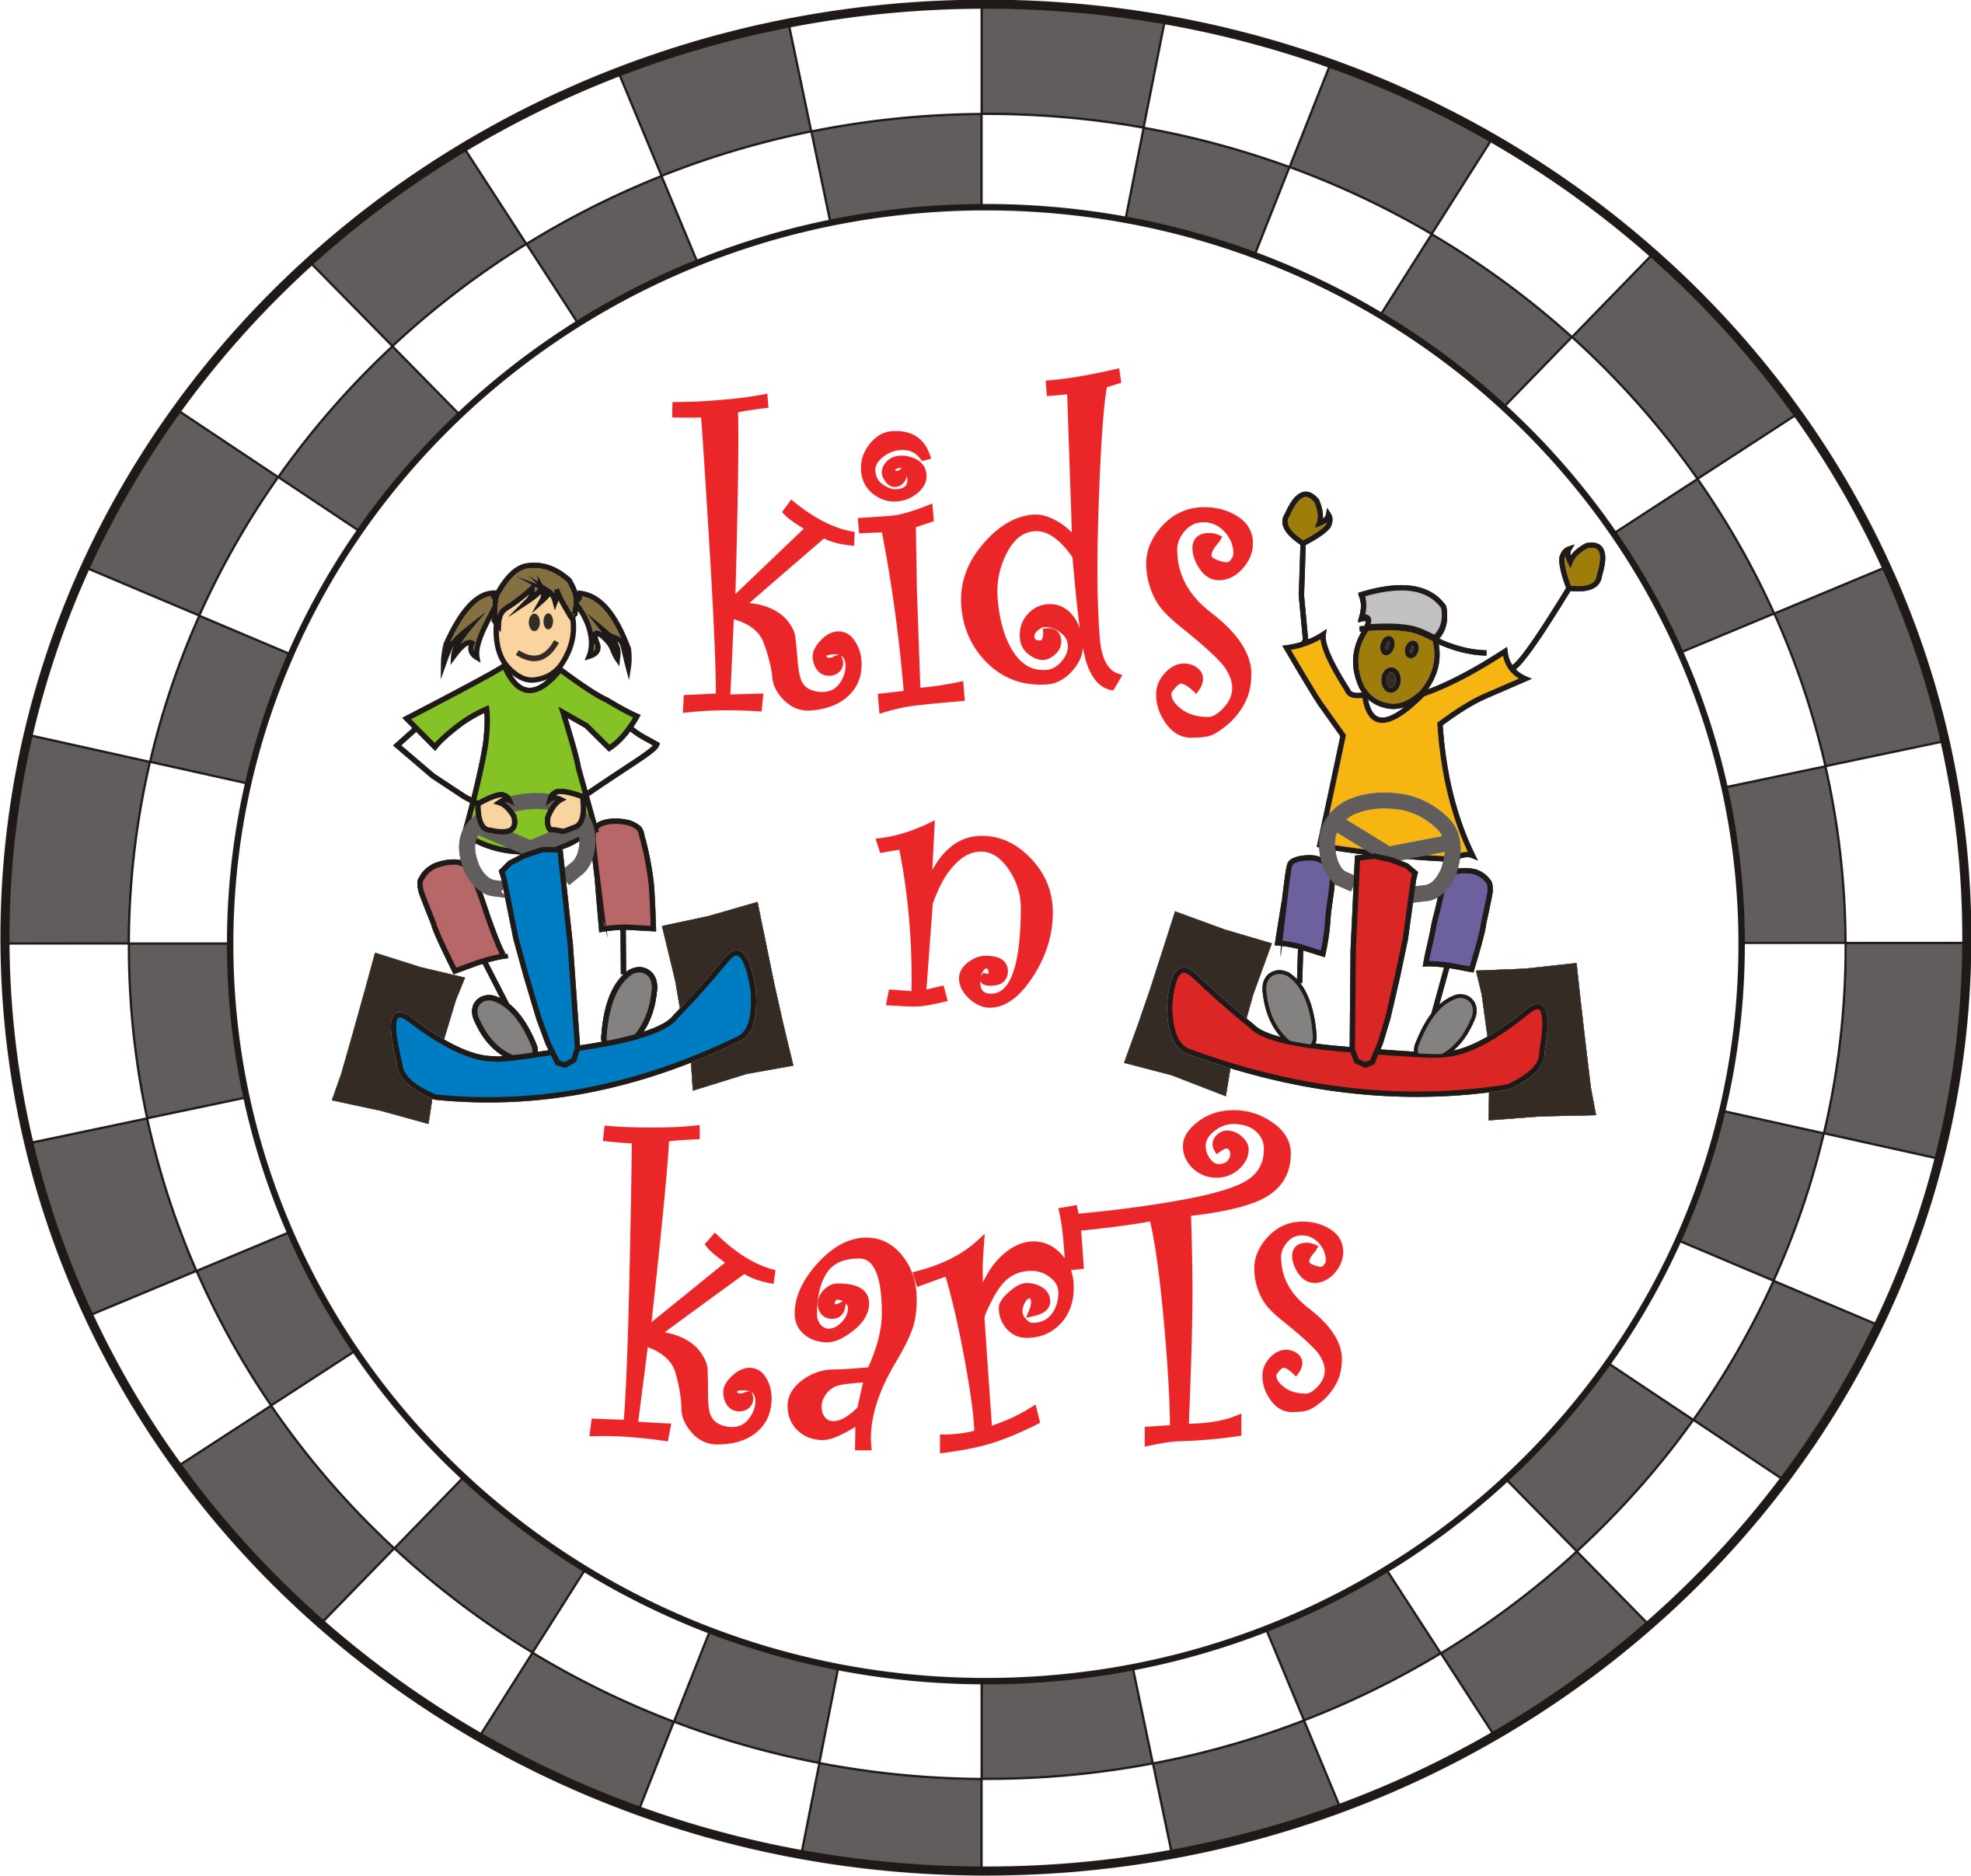 Kids Go Kart Parties